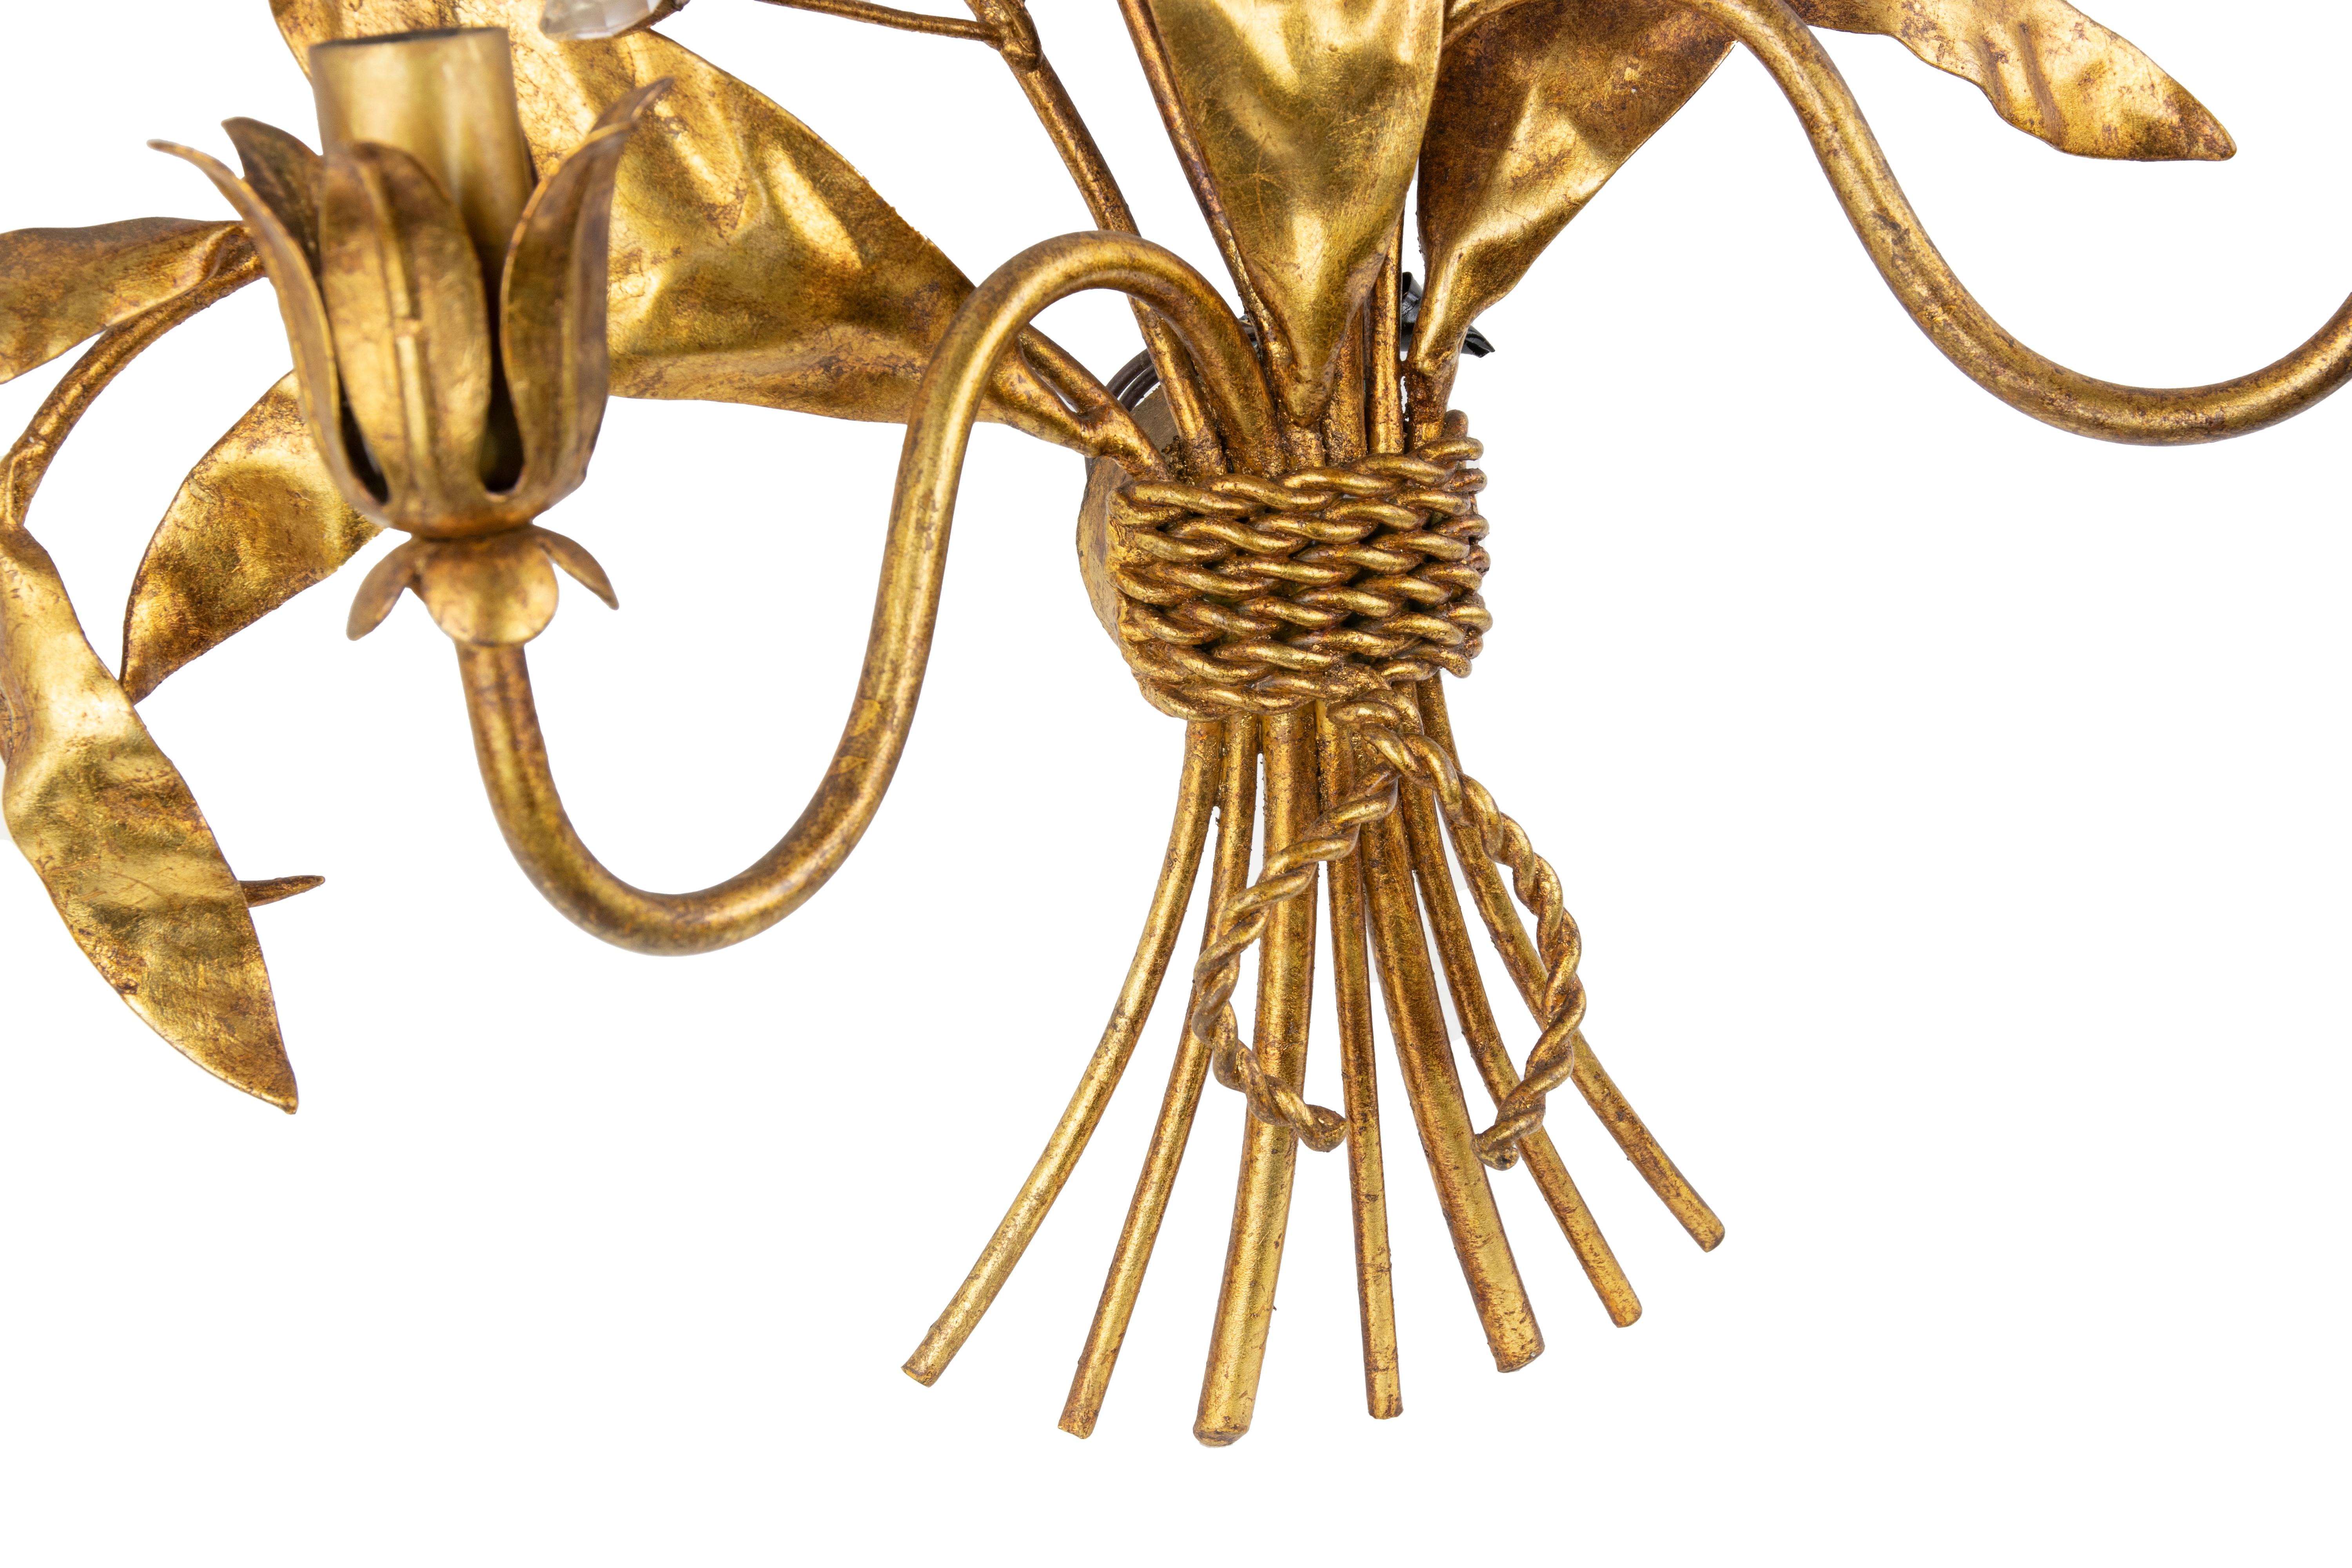 Applique en laiton doré dans le style de Hans Kogl, fin du 20e siècle.

2 lampes, très bon état.